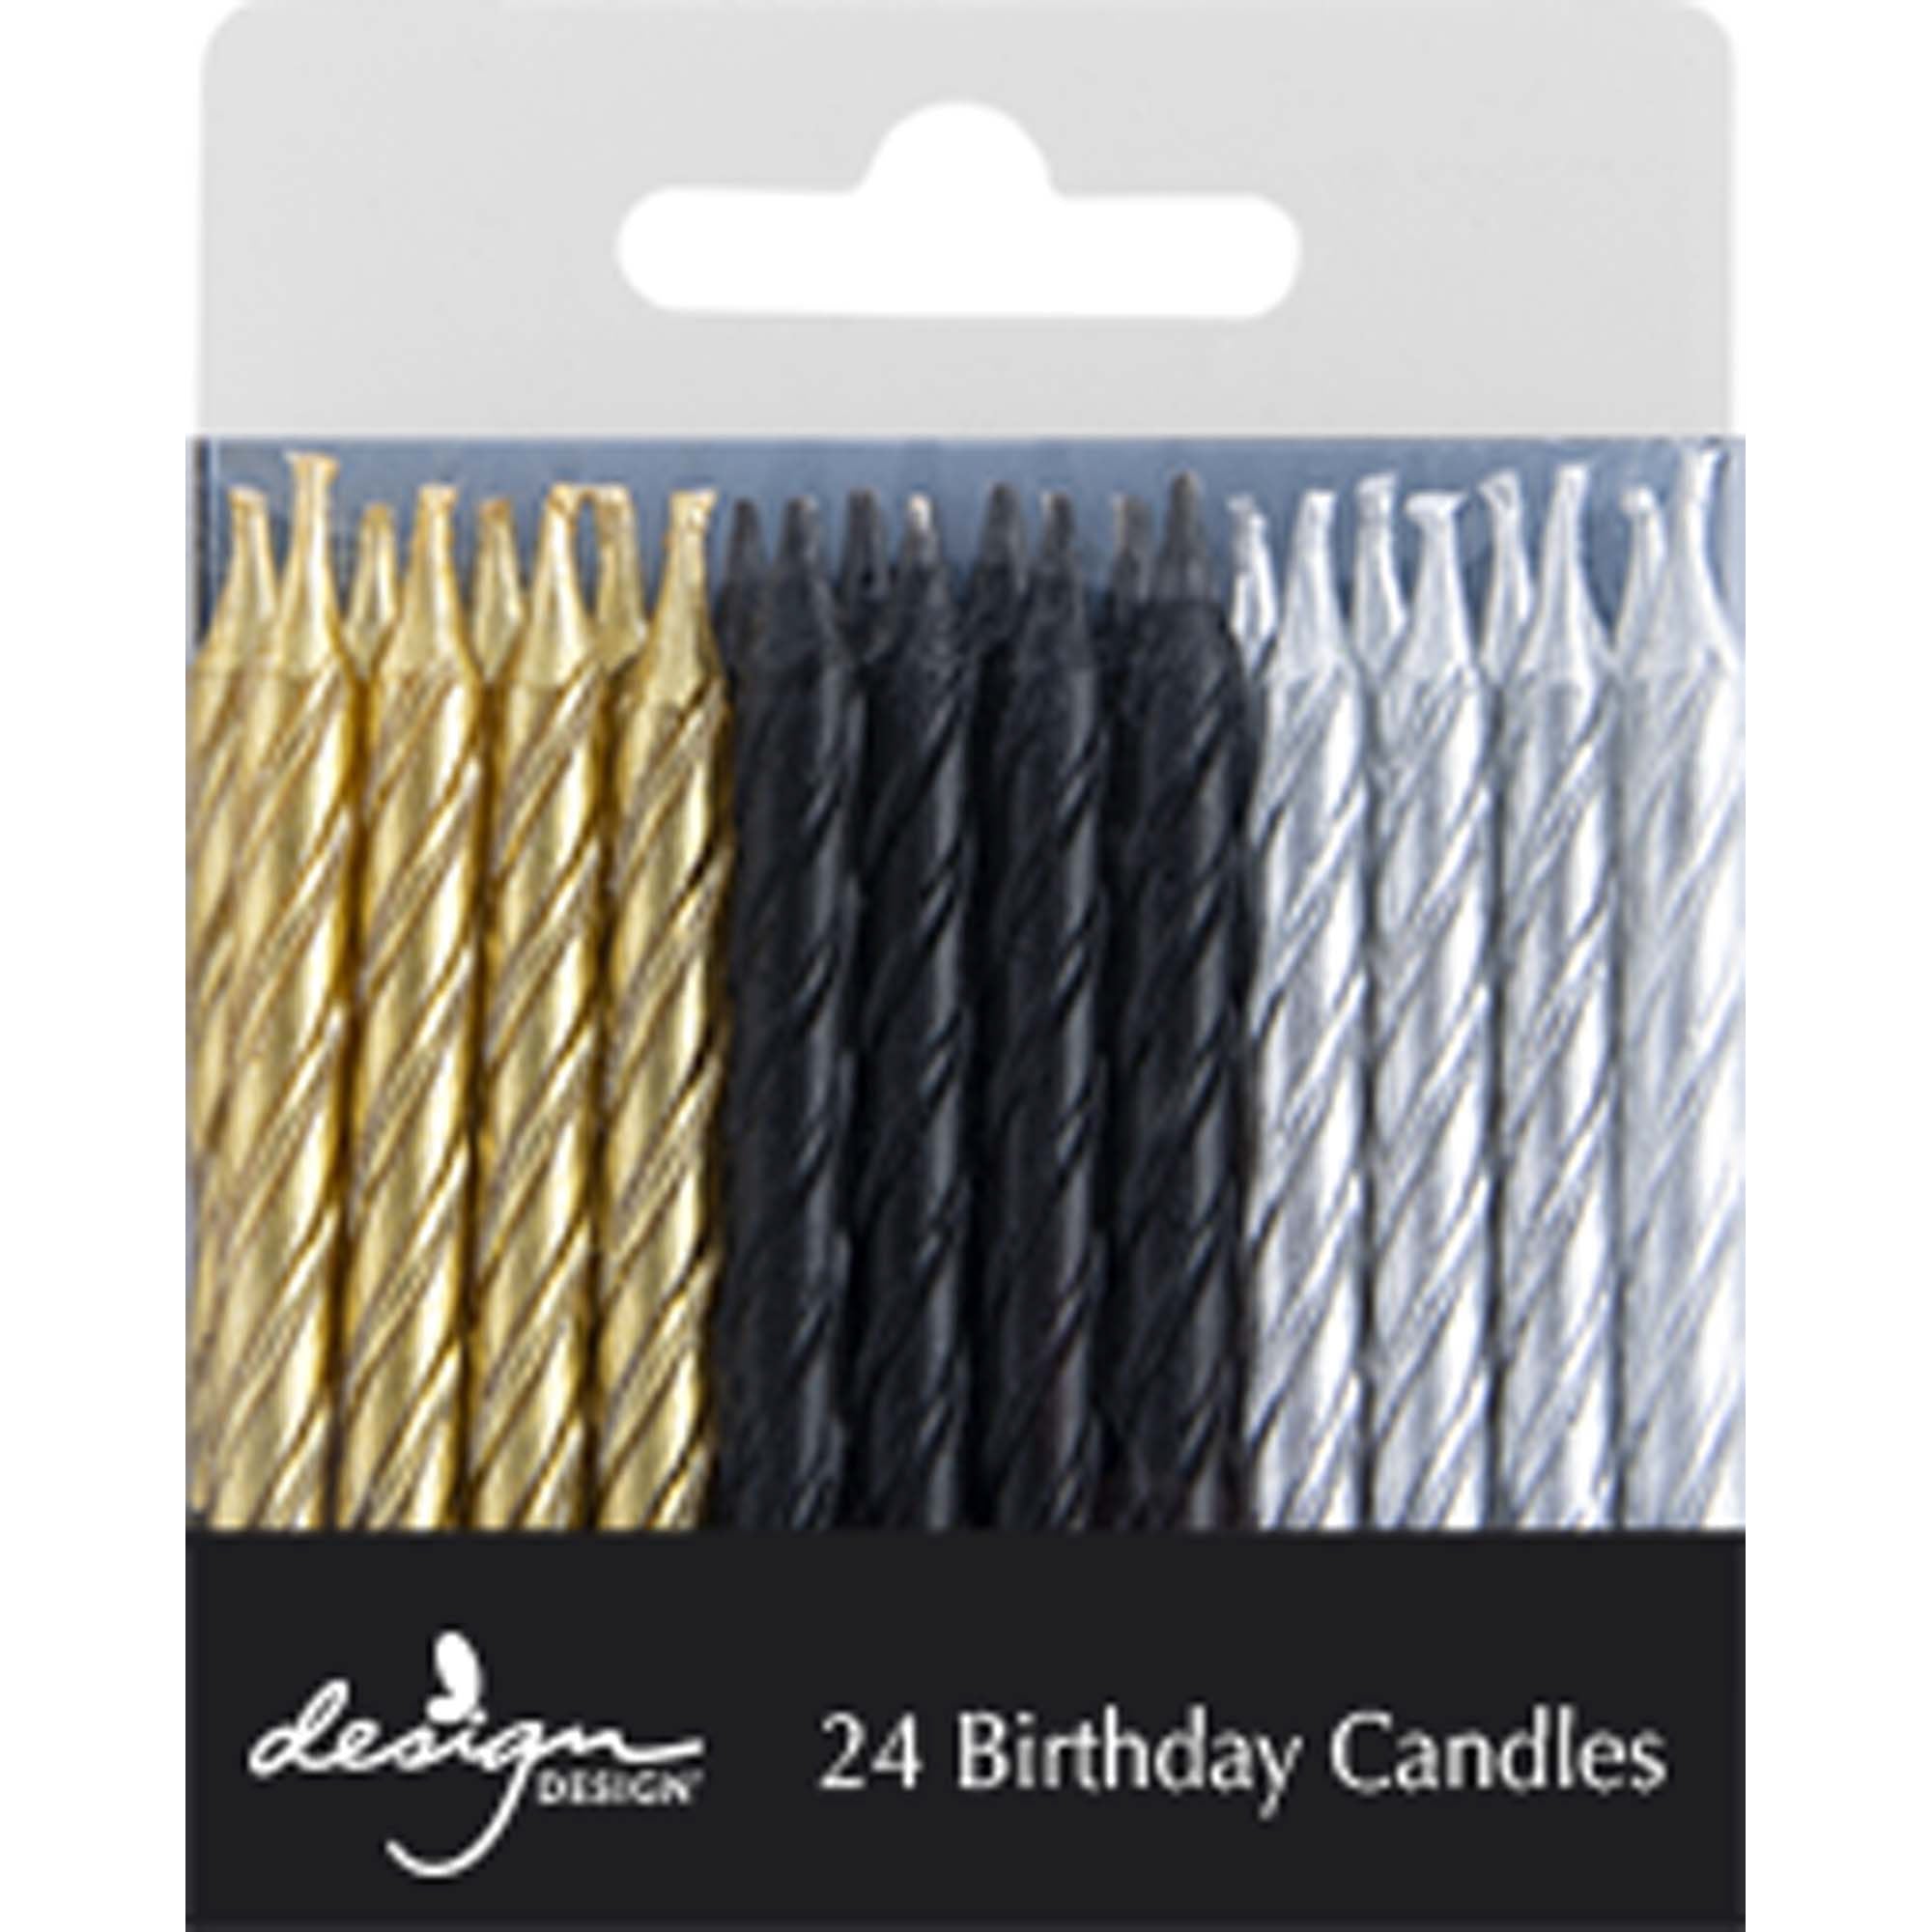 Buy black-gold-twist Design Design 24 Candles